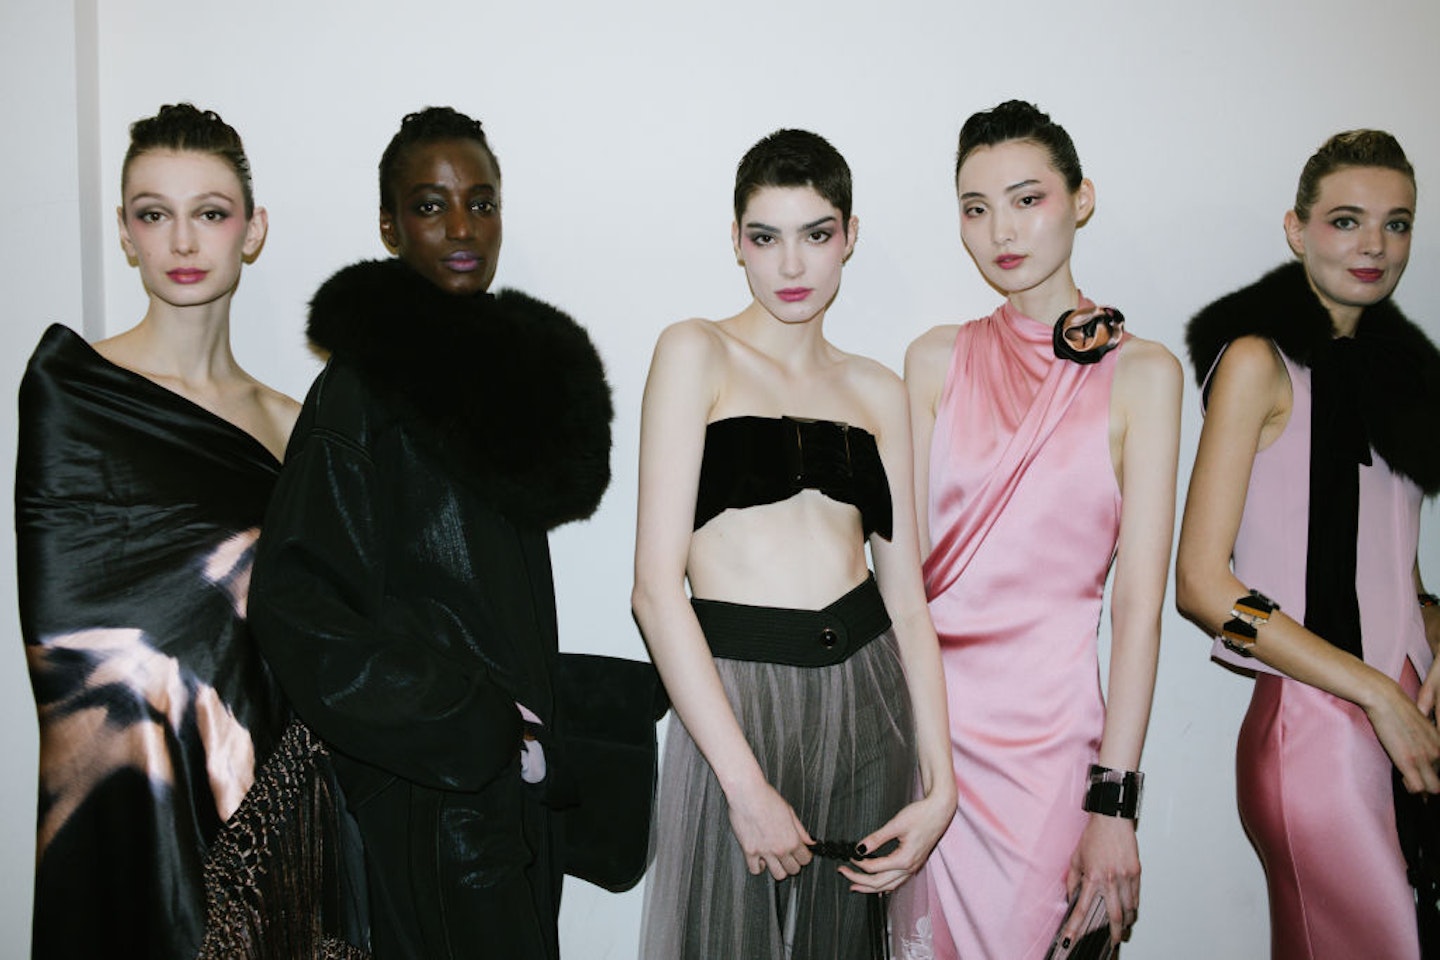 Diesel and Bottega Veneta Score HIgh at Milan Fashion Week - The